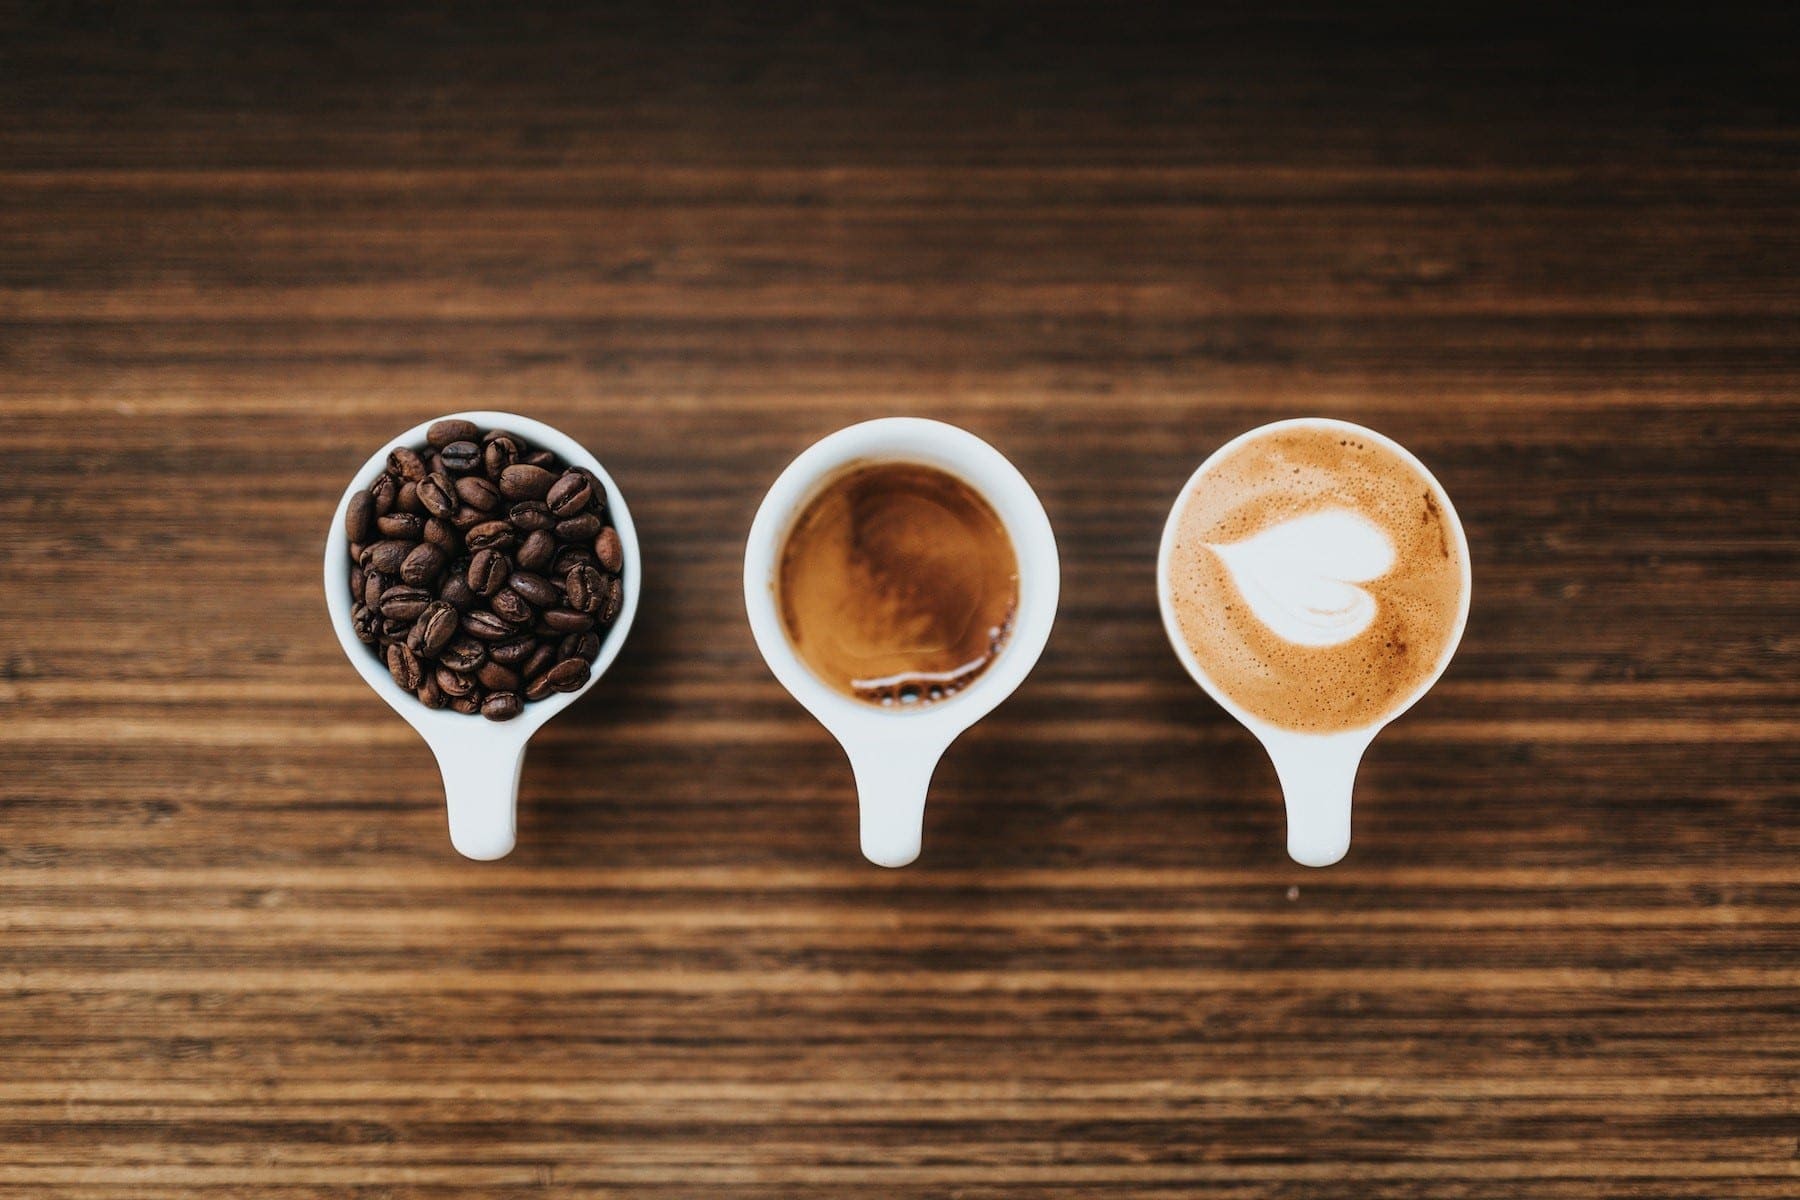 ما الفرق بين القهوة المختصة والتجارية حيث إذا كنت جديدًا في شرب القهوة فقد تتساءل عما إذا كانت القهوة المتخصصة تحدث فرقا، اكتشف الفرق الآن